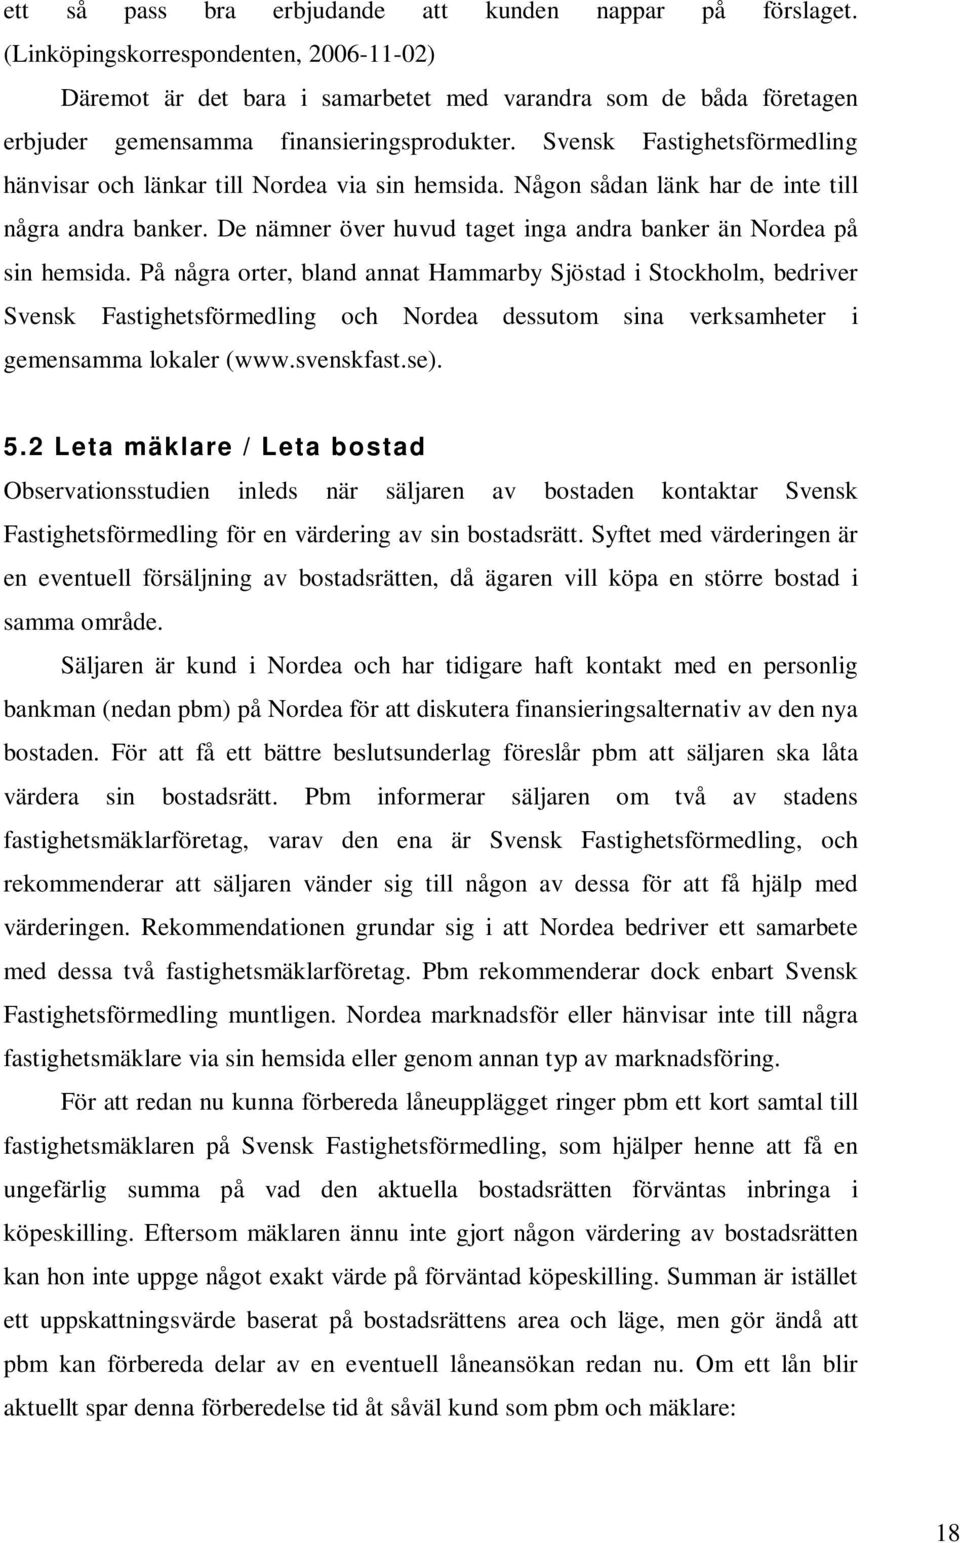 Svensk Fastighetsförmedling hänvisar och länkar till Nordea via sin hemsida. Någon sådan länk har de inte till några andra banker.